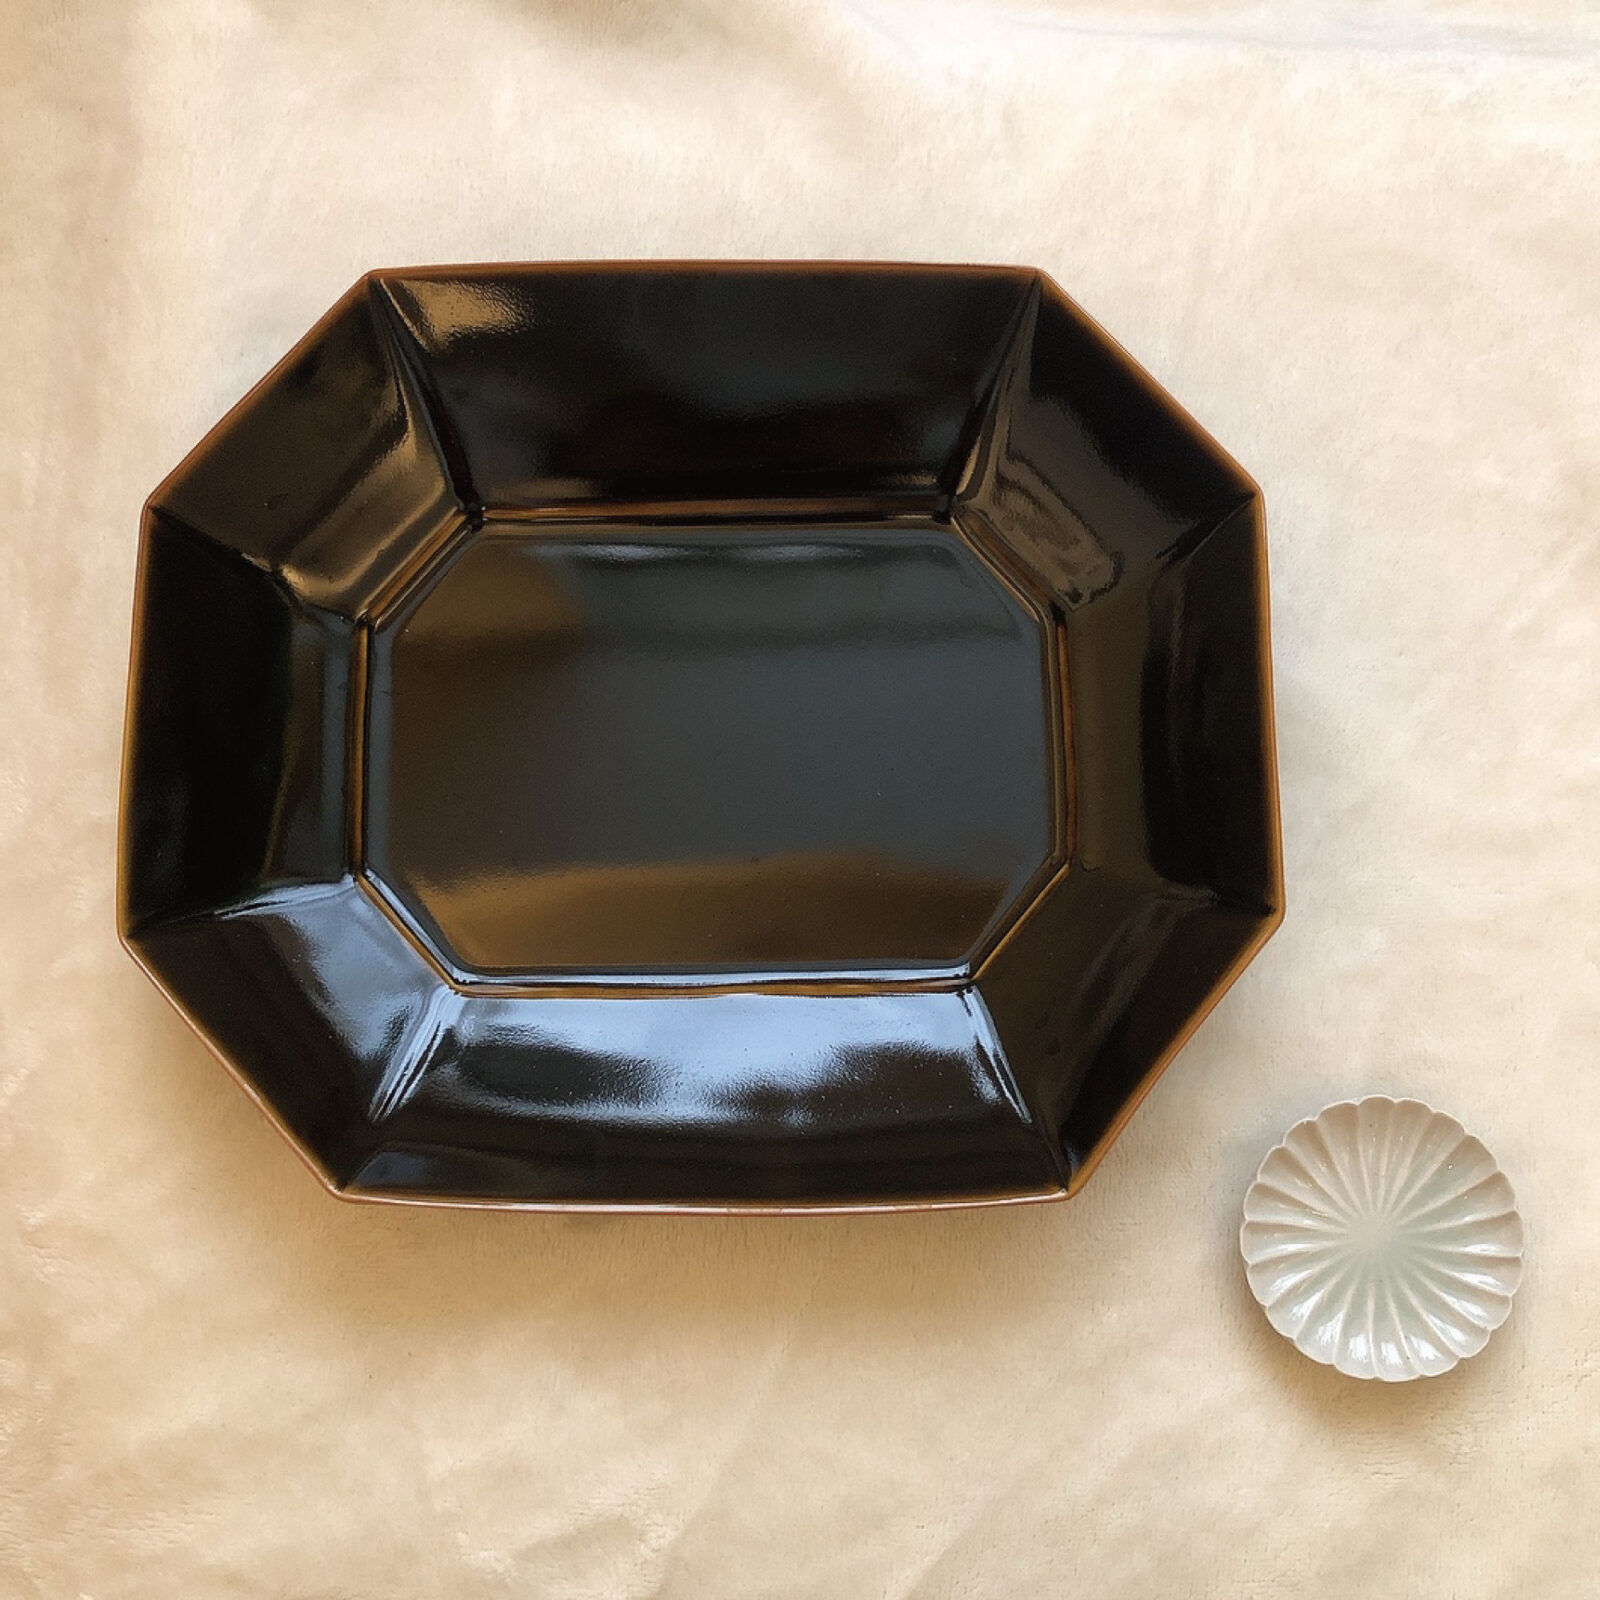 〈長戸製陶所 陶彩窯〉の飴釉八角皿と白磁輪花豆皿